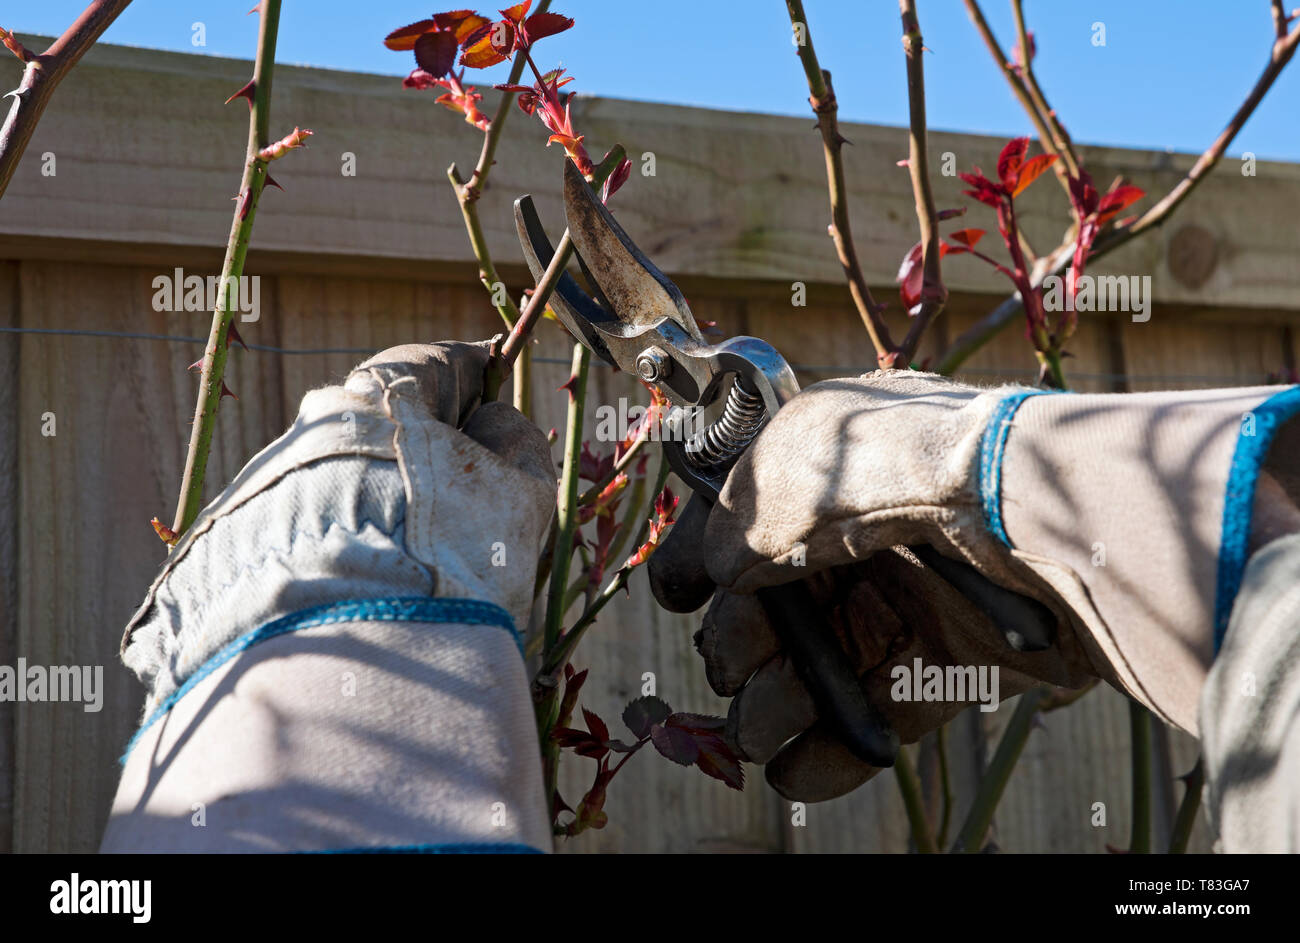 Gros plan de la personne homme jardinier portant des gants élagage arrière rosiers avec sécateurs au printemps Angleterre Royaume-Uni Grande-Bretagne Banque D'Images